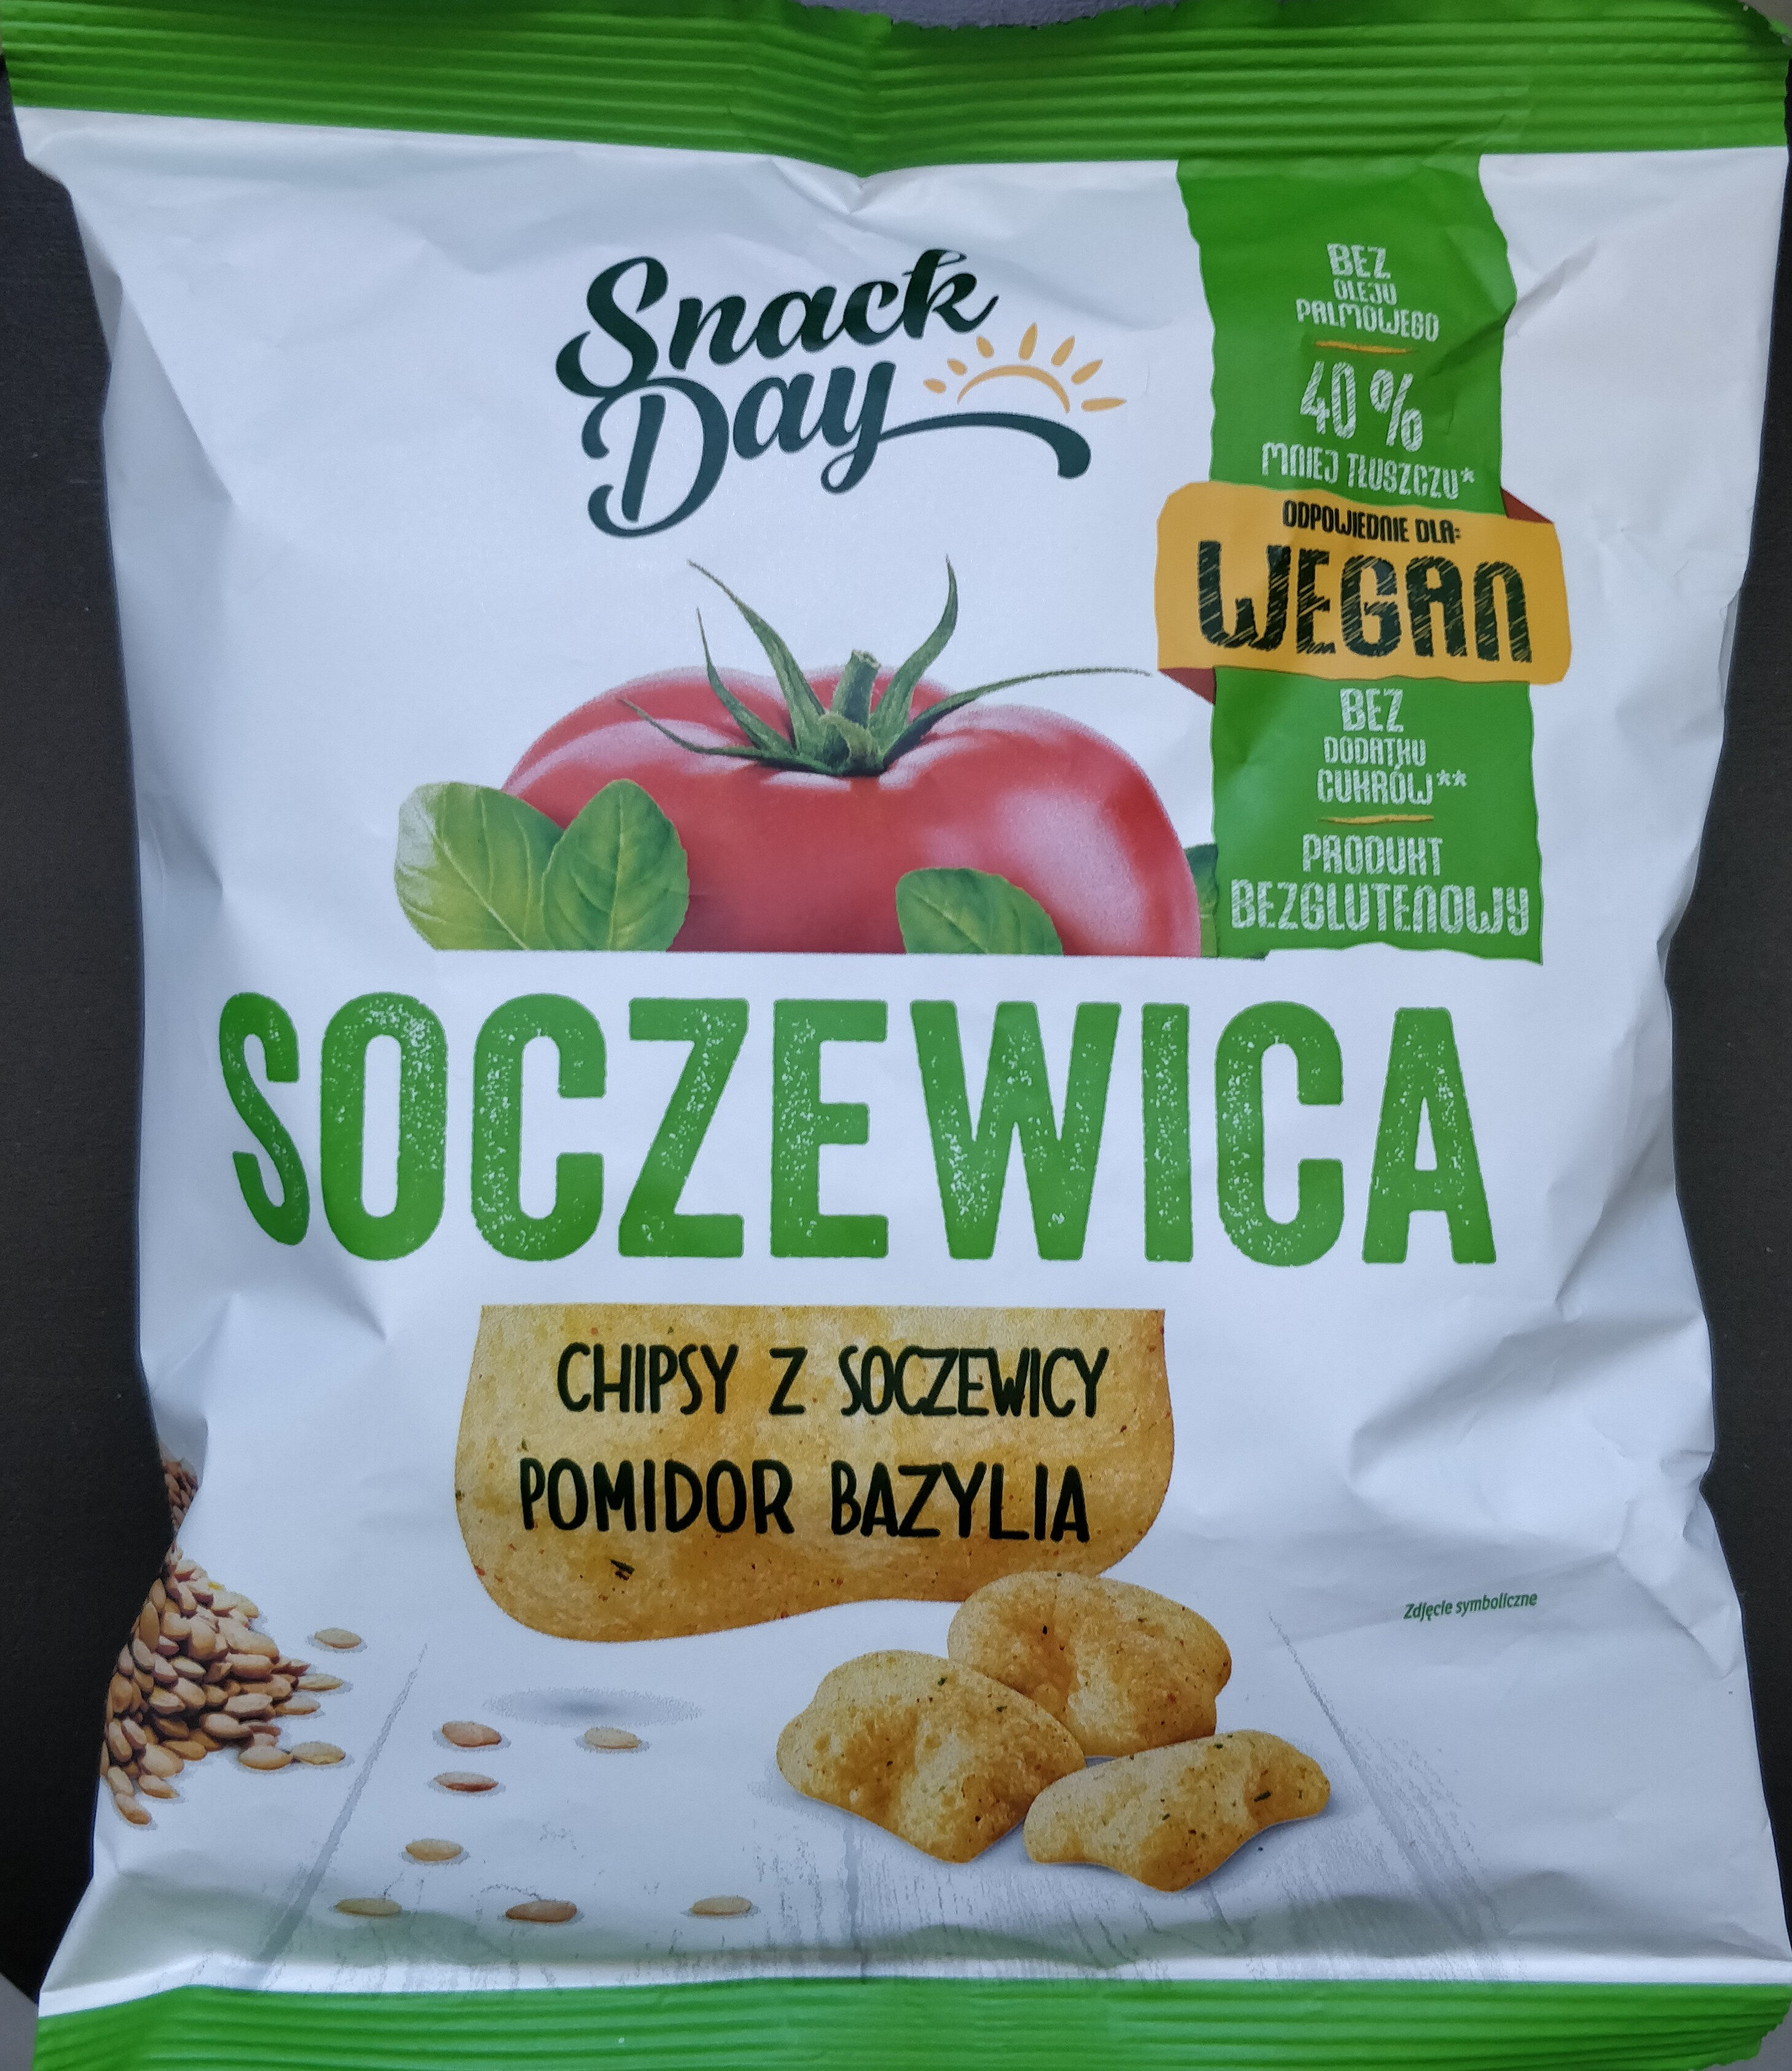 Chipsy z soczewicy pomidor bazylia - Product - pl